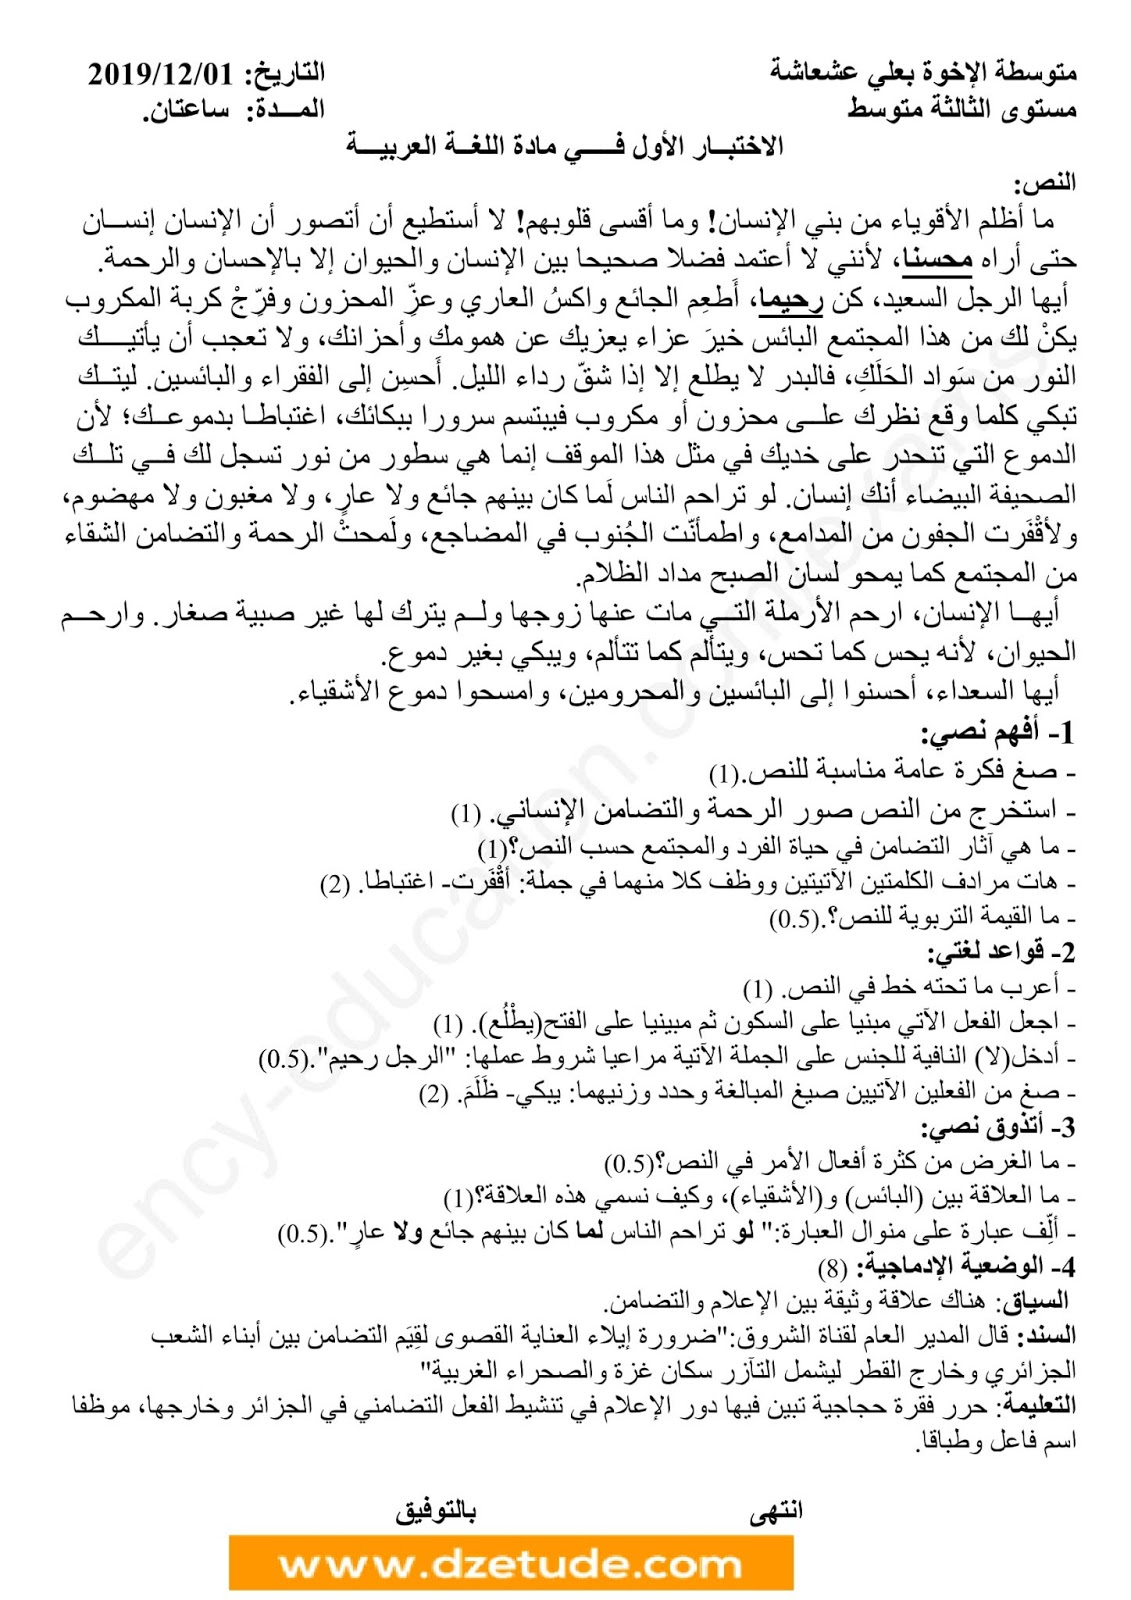 إختبار اللغة العربية الفصل الأول للسنة الثالثة متوسط - الجيل الثاني نموذج 5